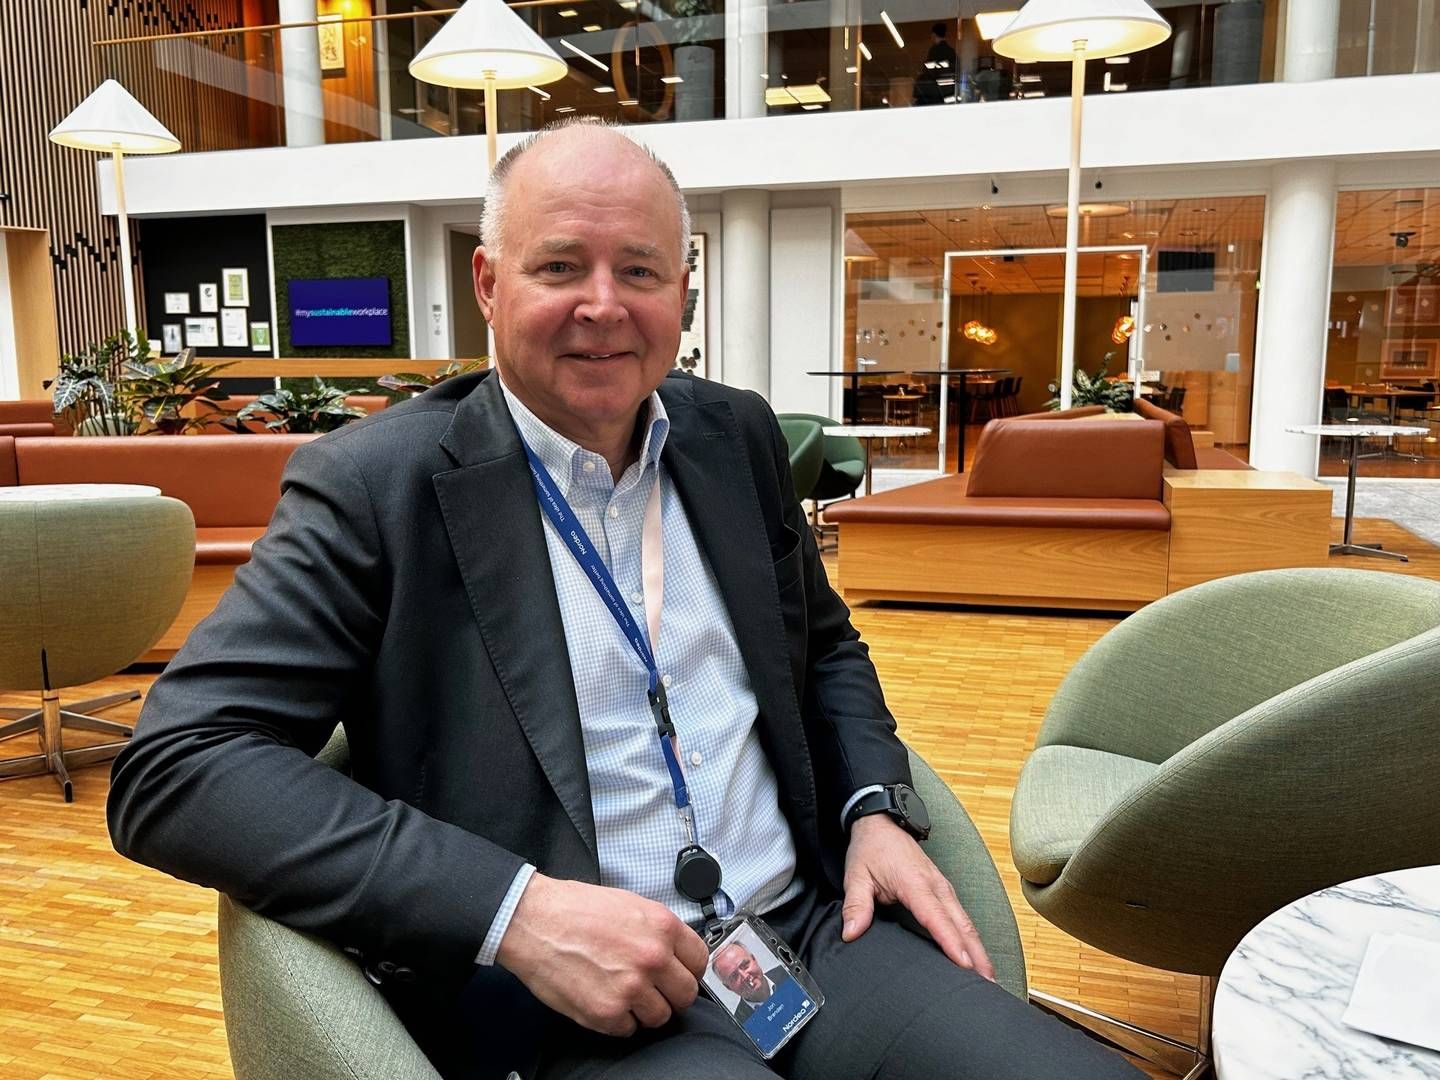 16 PROSENT: Leder for bedriftsmarked i Nordea, Jon Brenden hadde rente på 16 prosent da han kjøpte sin første bolig. | Foto: Trym Isaksen